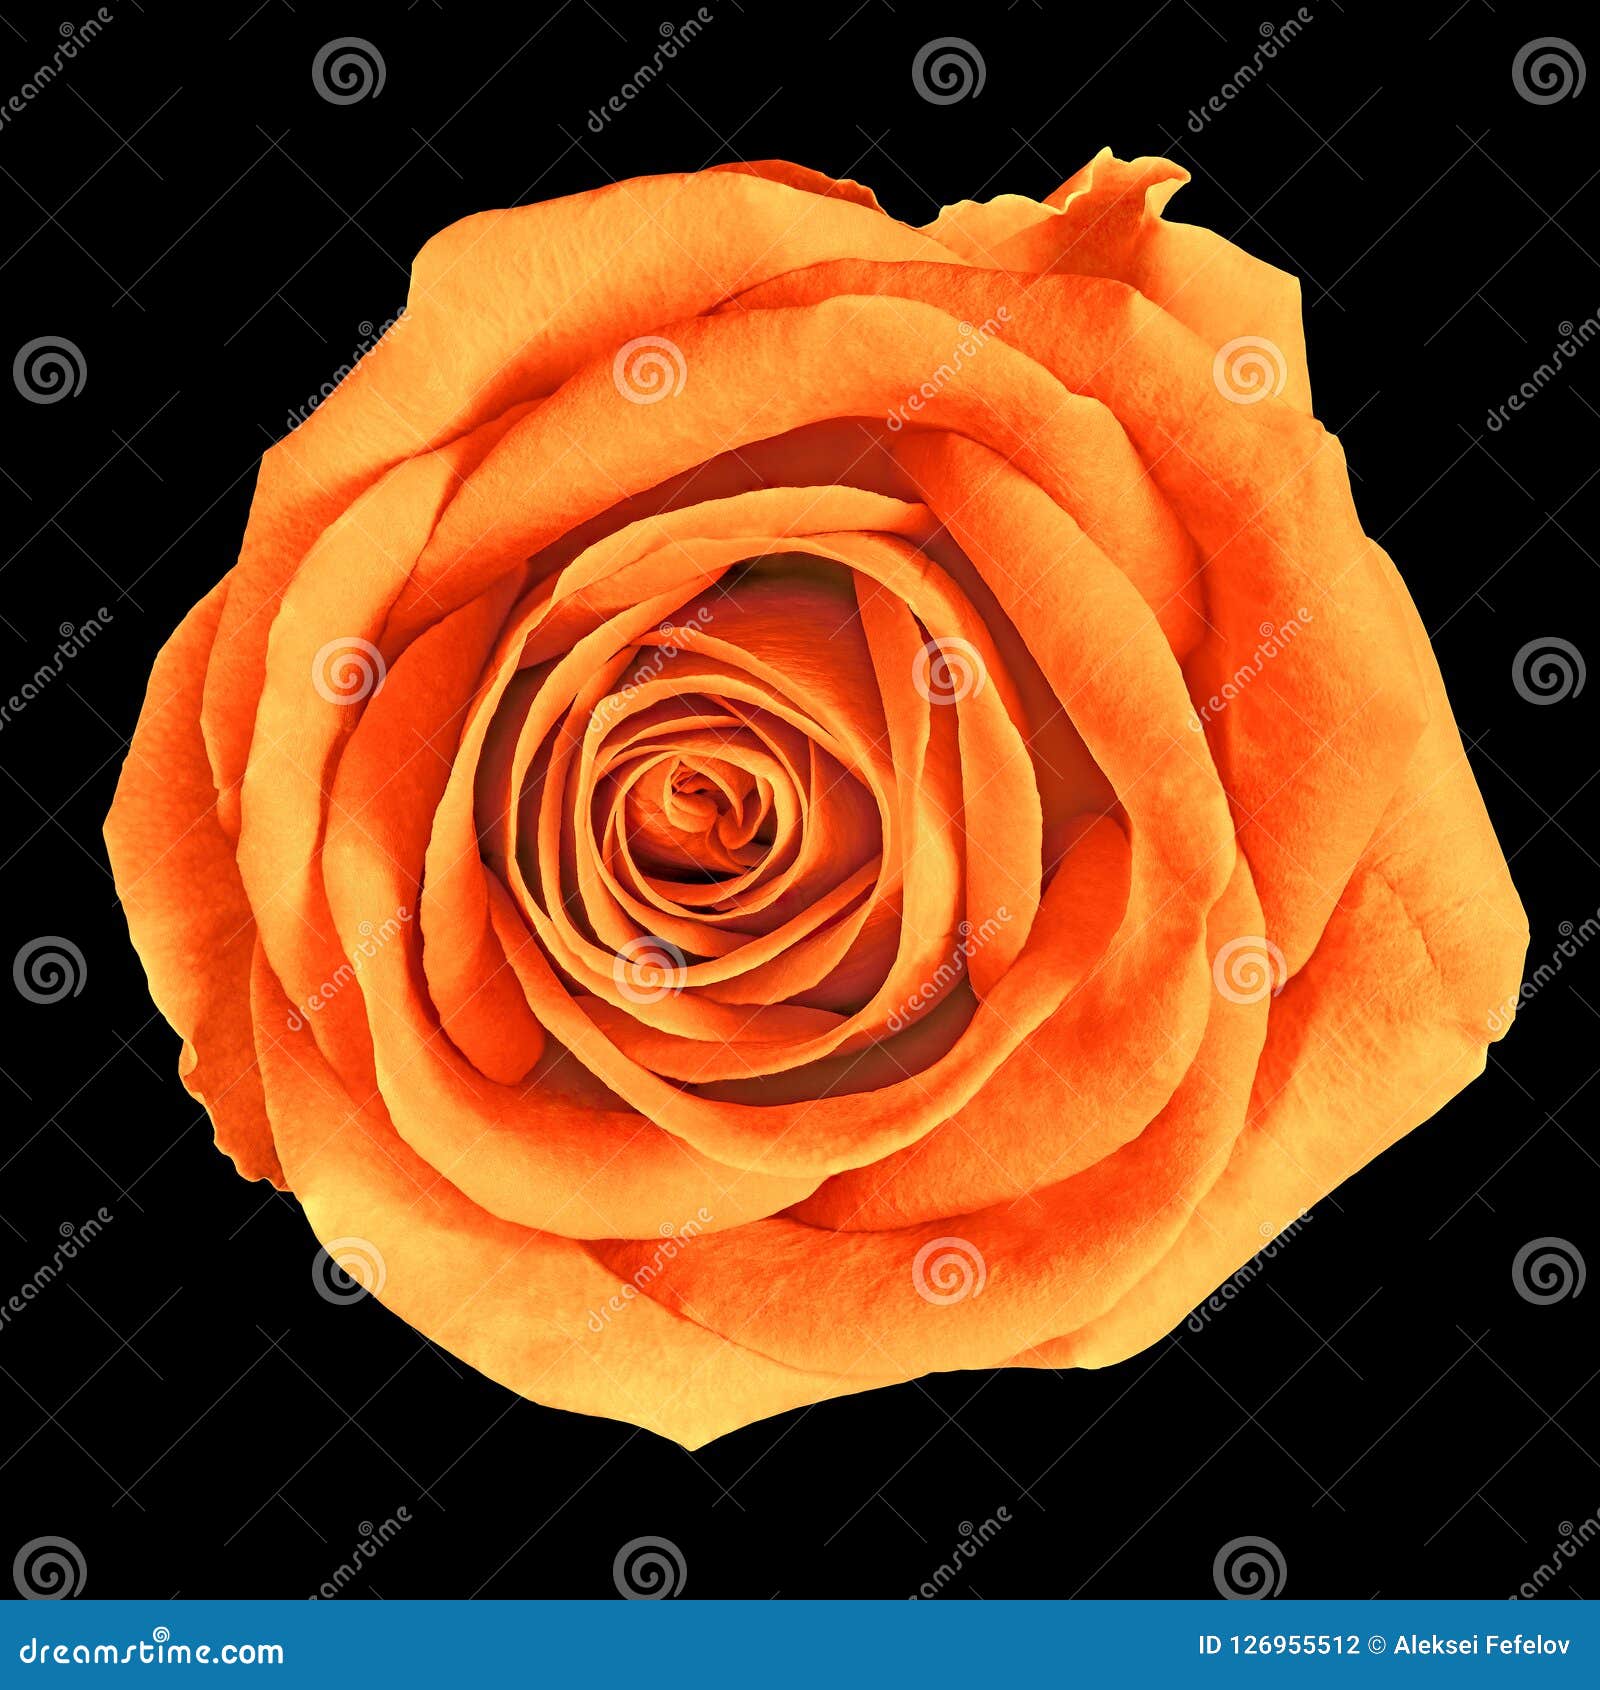 Hãy để mình tràn ngập trong sự ấm áp và lãng mạn với hình ảnh một bông hoa hồng cam nhuộm màu vàng cổ điển. Sự kết hợp giữa màu cam và vàng tạo nên một vẻ đẹp đầy thu hút mà bạn không thể bỏ qua.